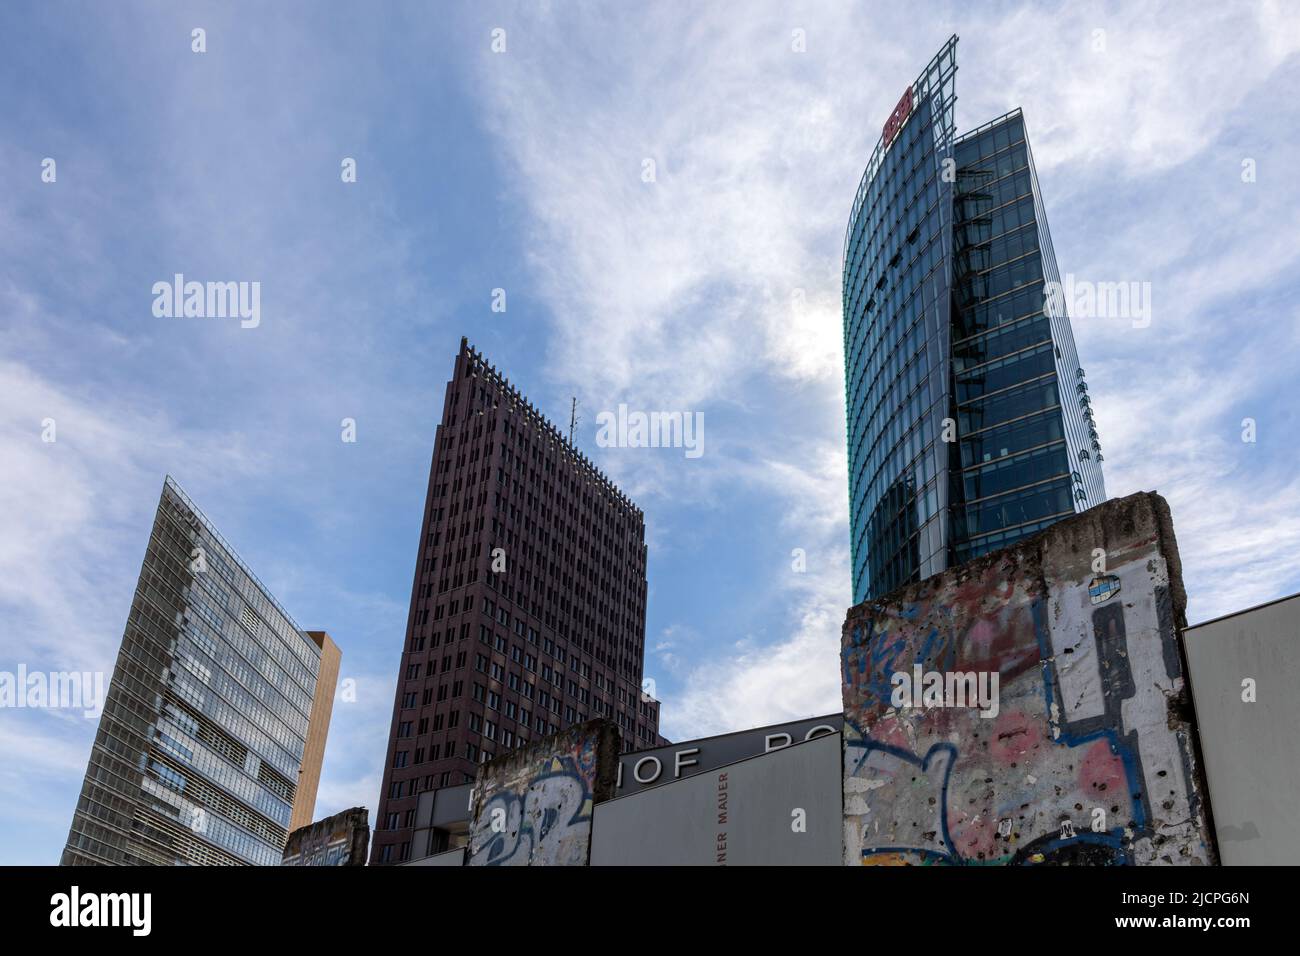 Originalteile der Berliner Mauer, mit neuen Hochhausentwicklungen im Hintergrund, am Potsdamer Platz, Berlin, Deutschland Stockfoto